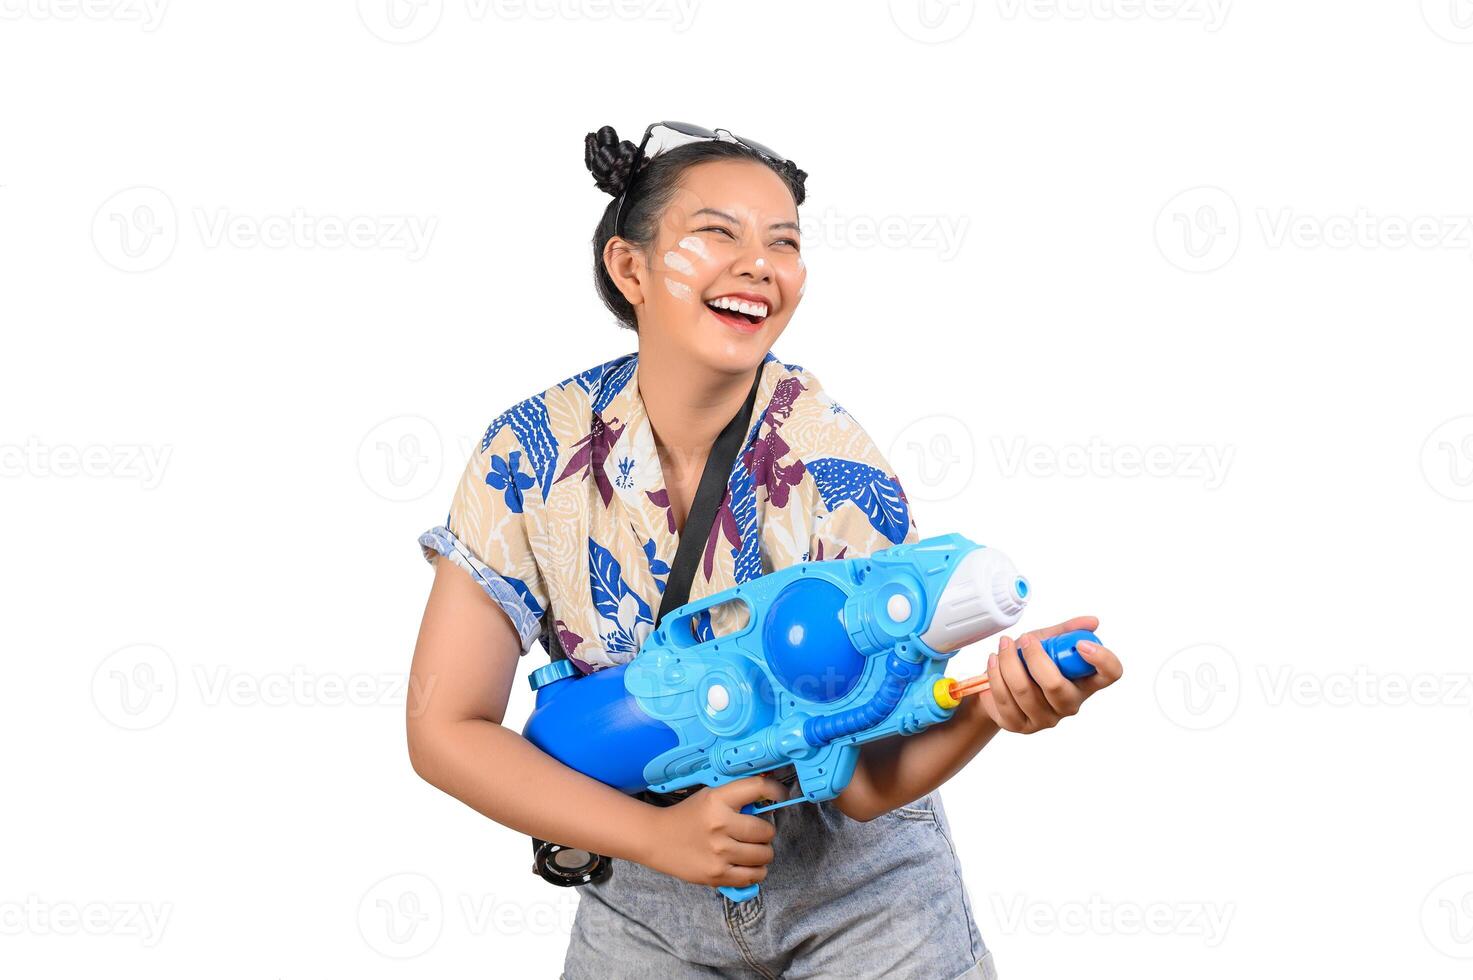 portrait jolie femme au festival de songkran avec pistolet à eau photo